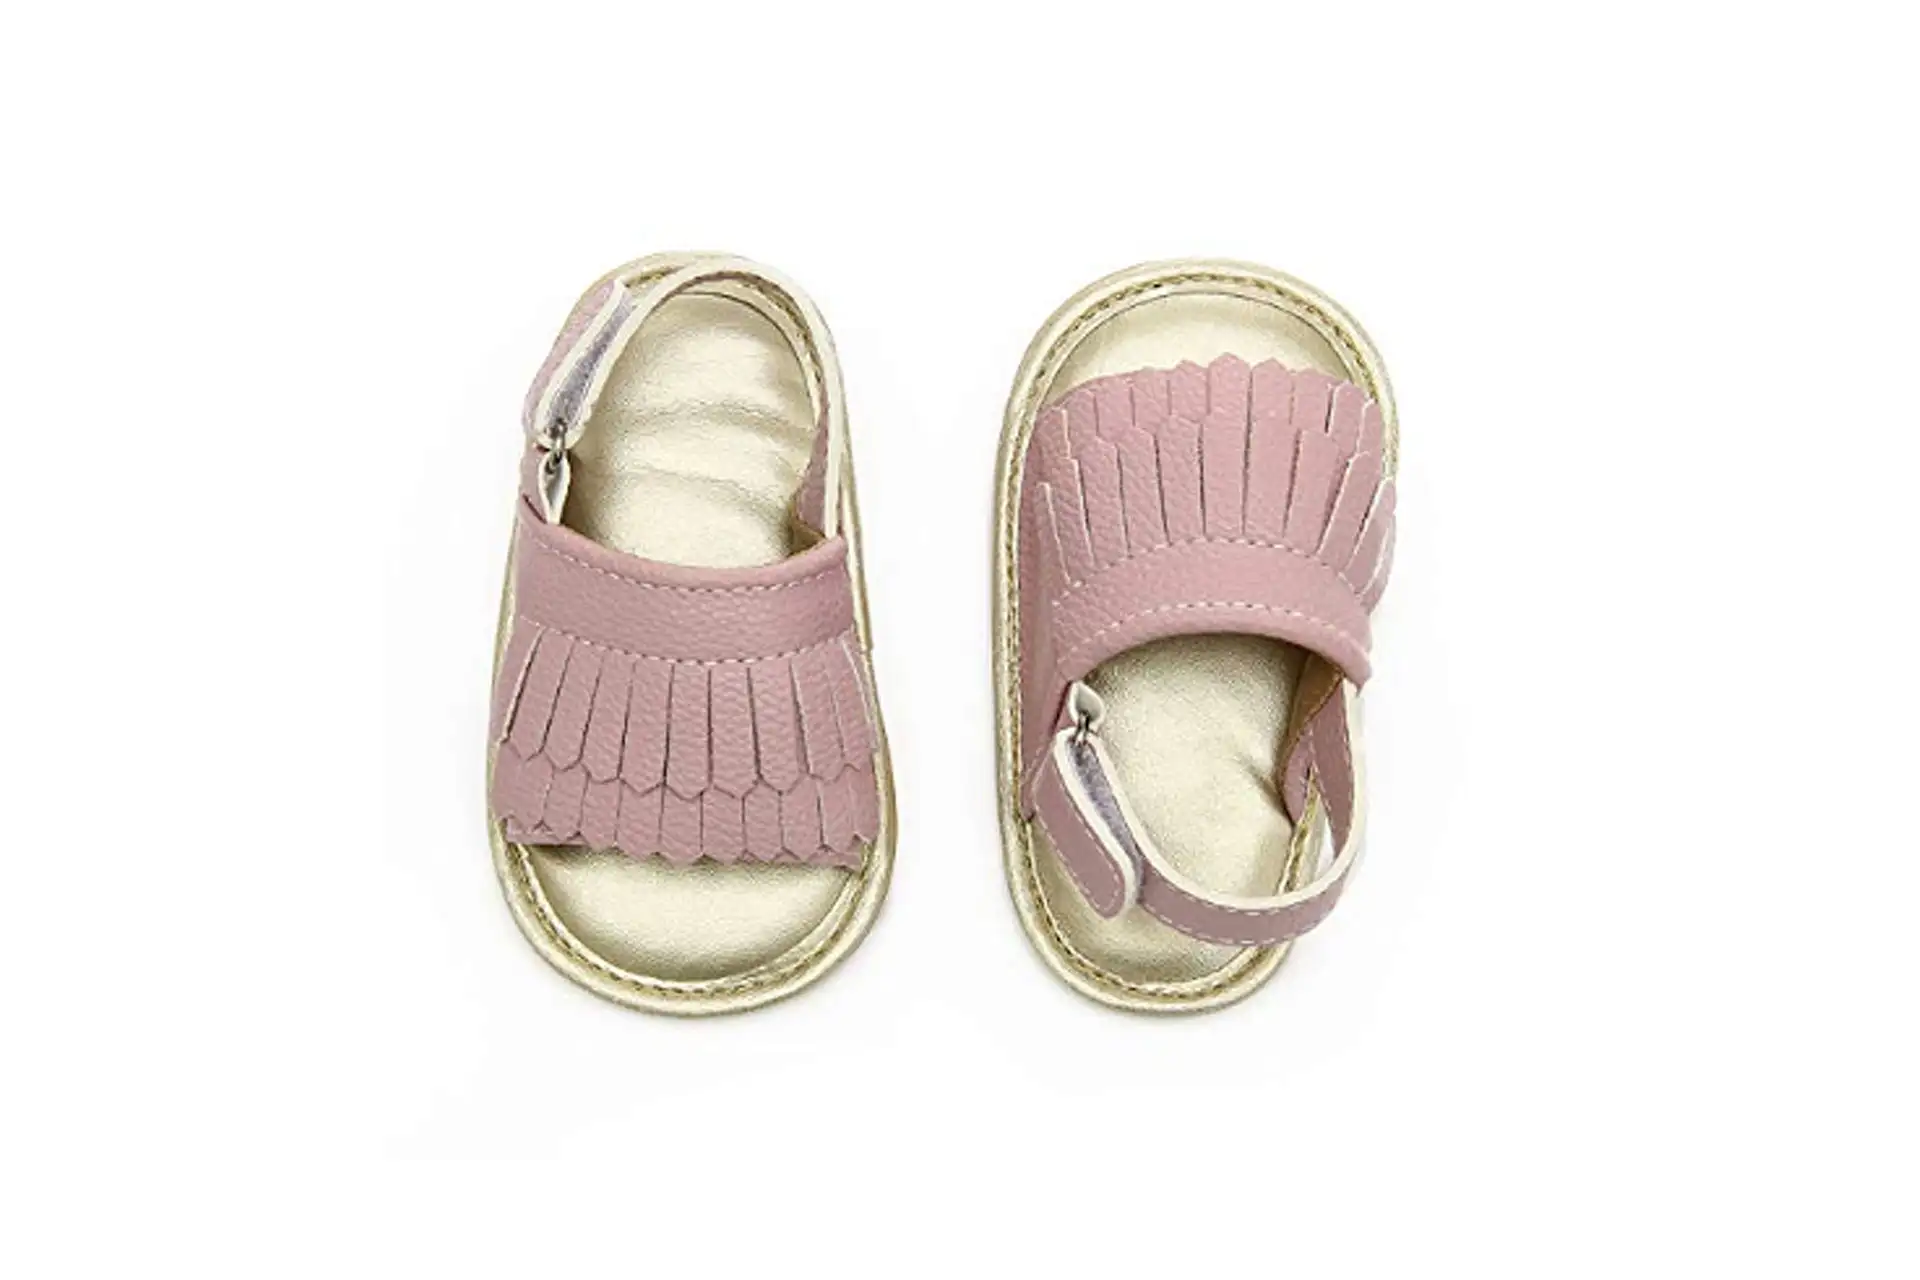 Koshine Baby Sandals; Courtesy of Amazon